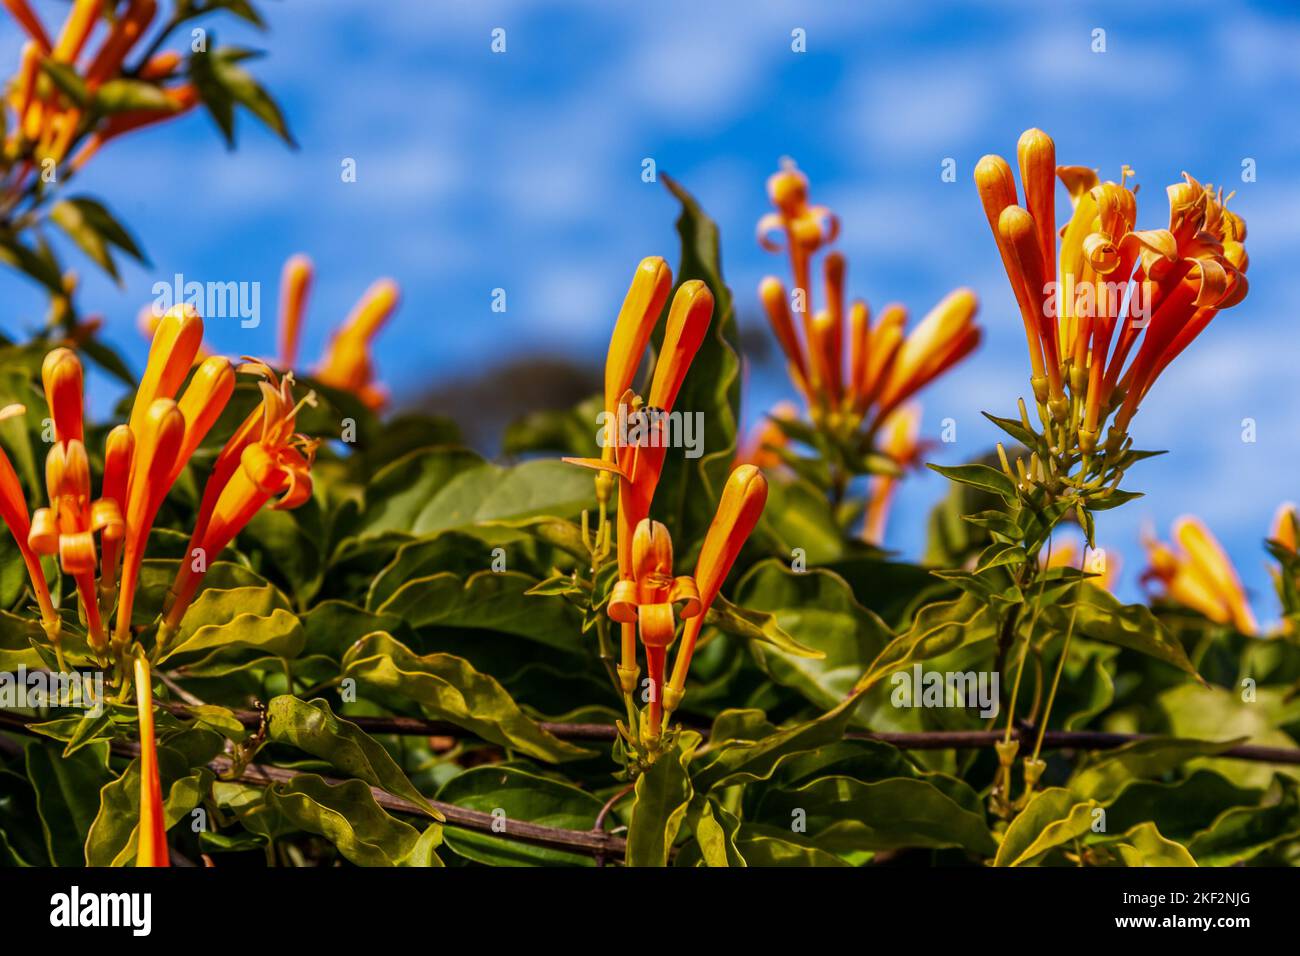 Pyrostegia venusta, auch bekannt als Flamevine- oder Orangentrompetenrebe, ist eine Pflanzenart der Gattung Pyrostegia der Familie Bignoniaceae ori Stockfoto